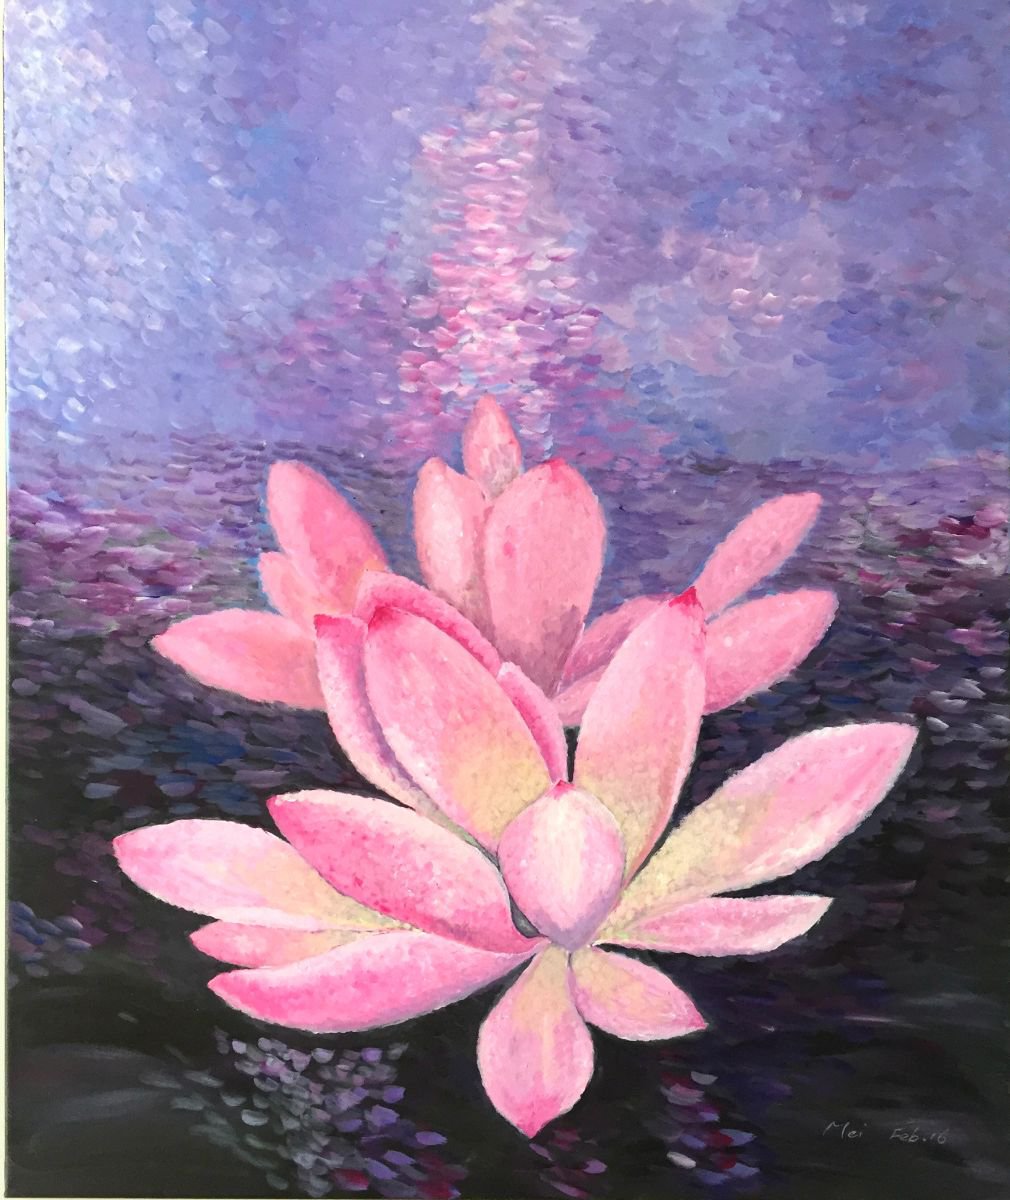 waterlily by Angelflower (Sun Mei)